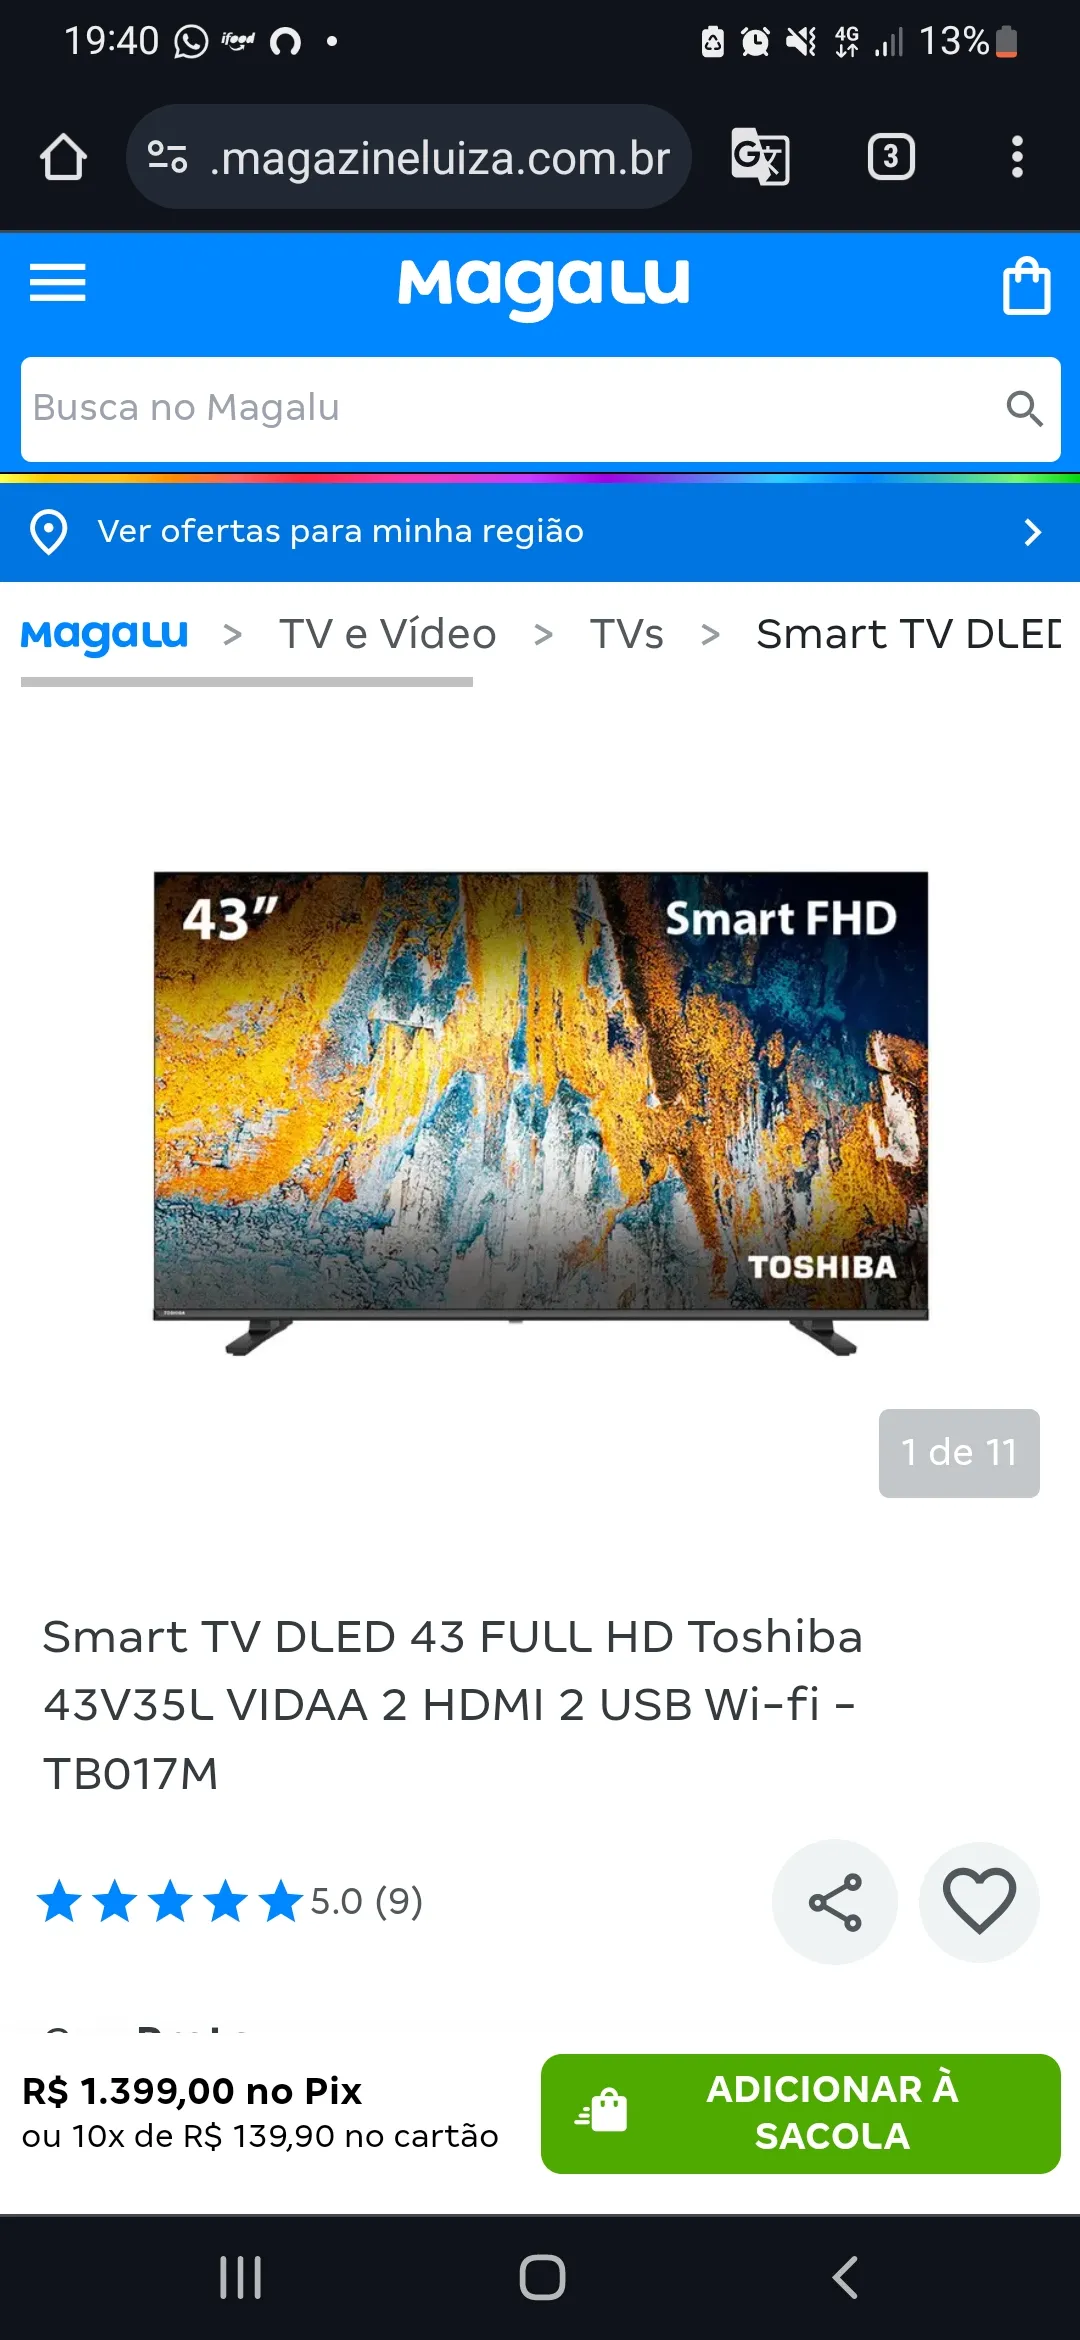 Smart TV DLED 43 FULL HD Toshiba 43V35L VIDAA 2 HDMI 2 USB Wi-fi - TB017M